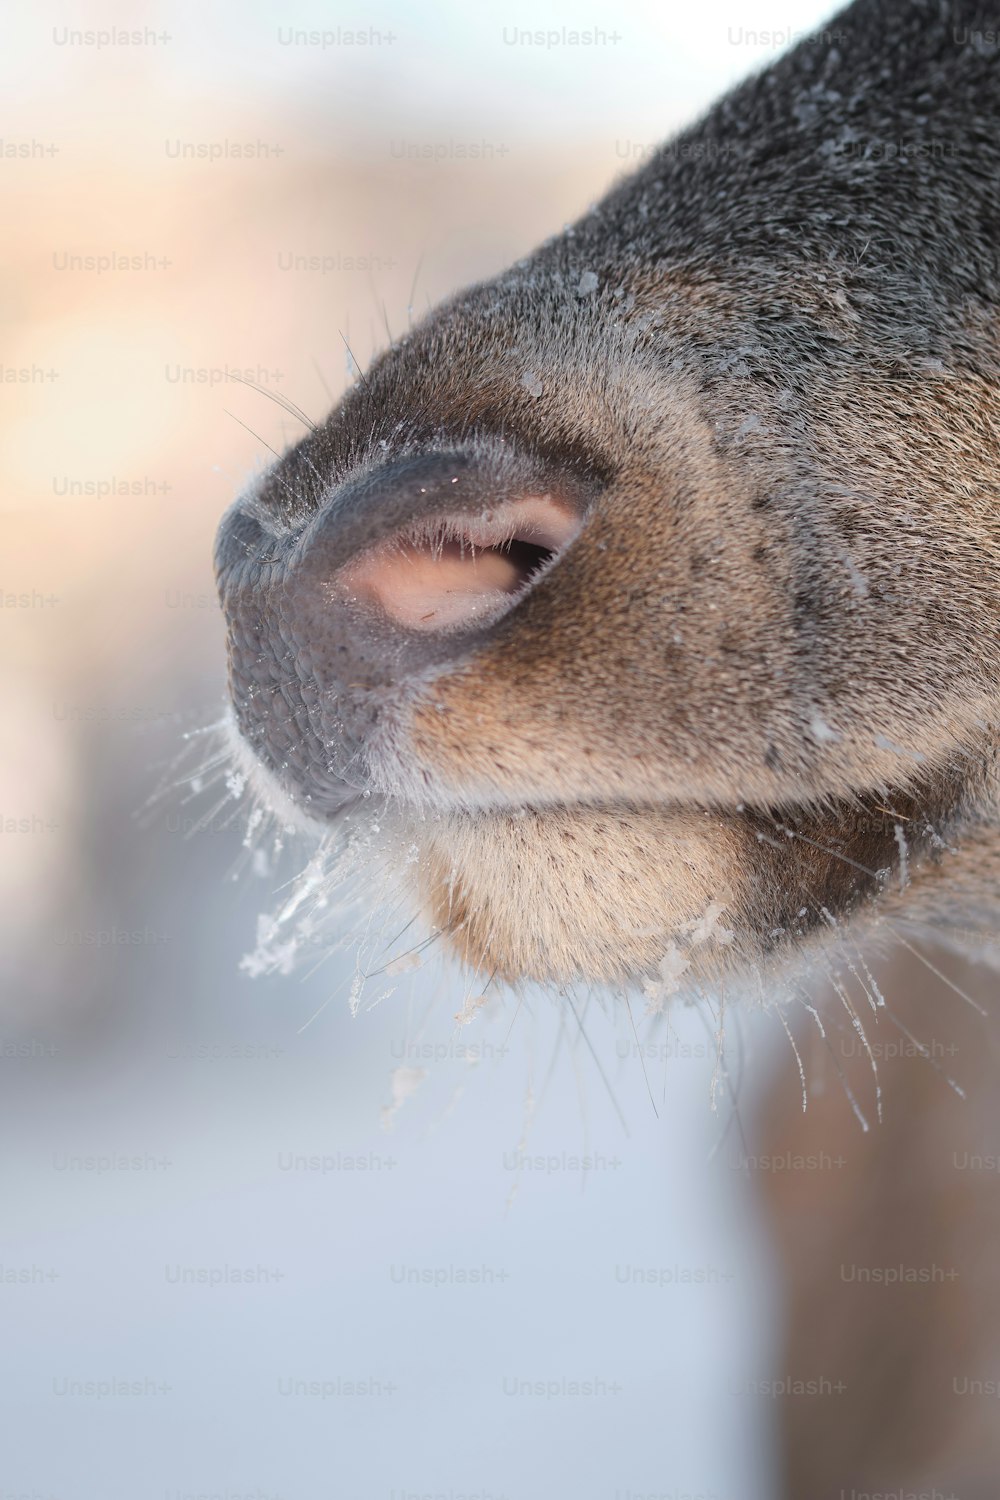 Un primer plano de la nariz de un ciervo